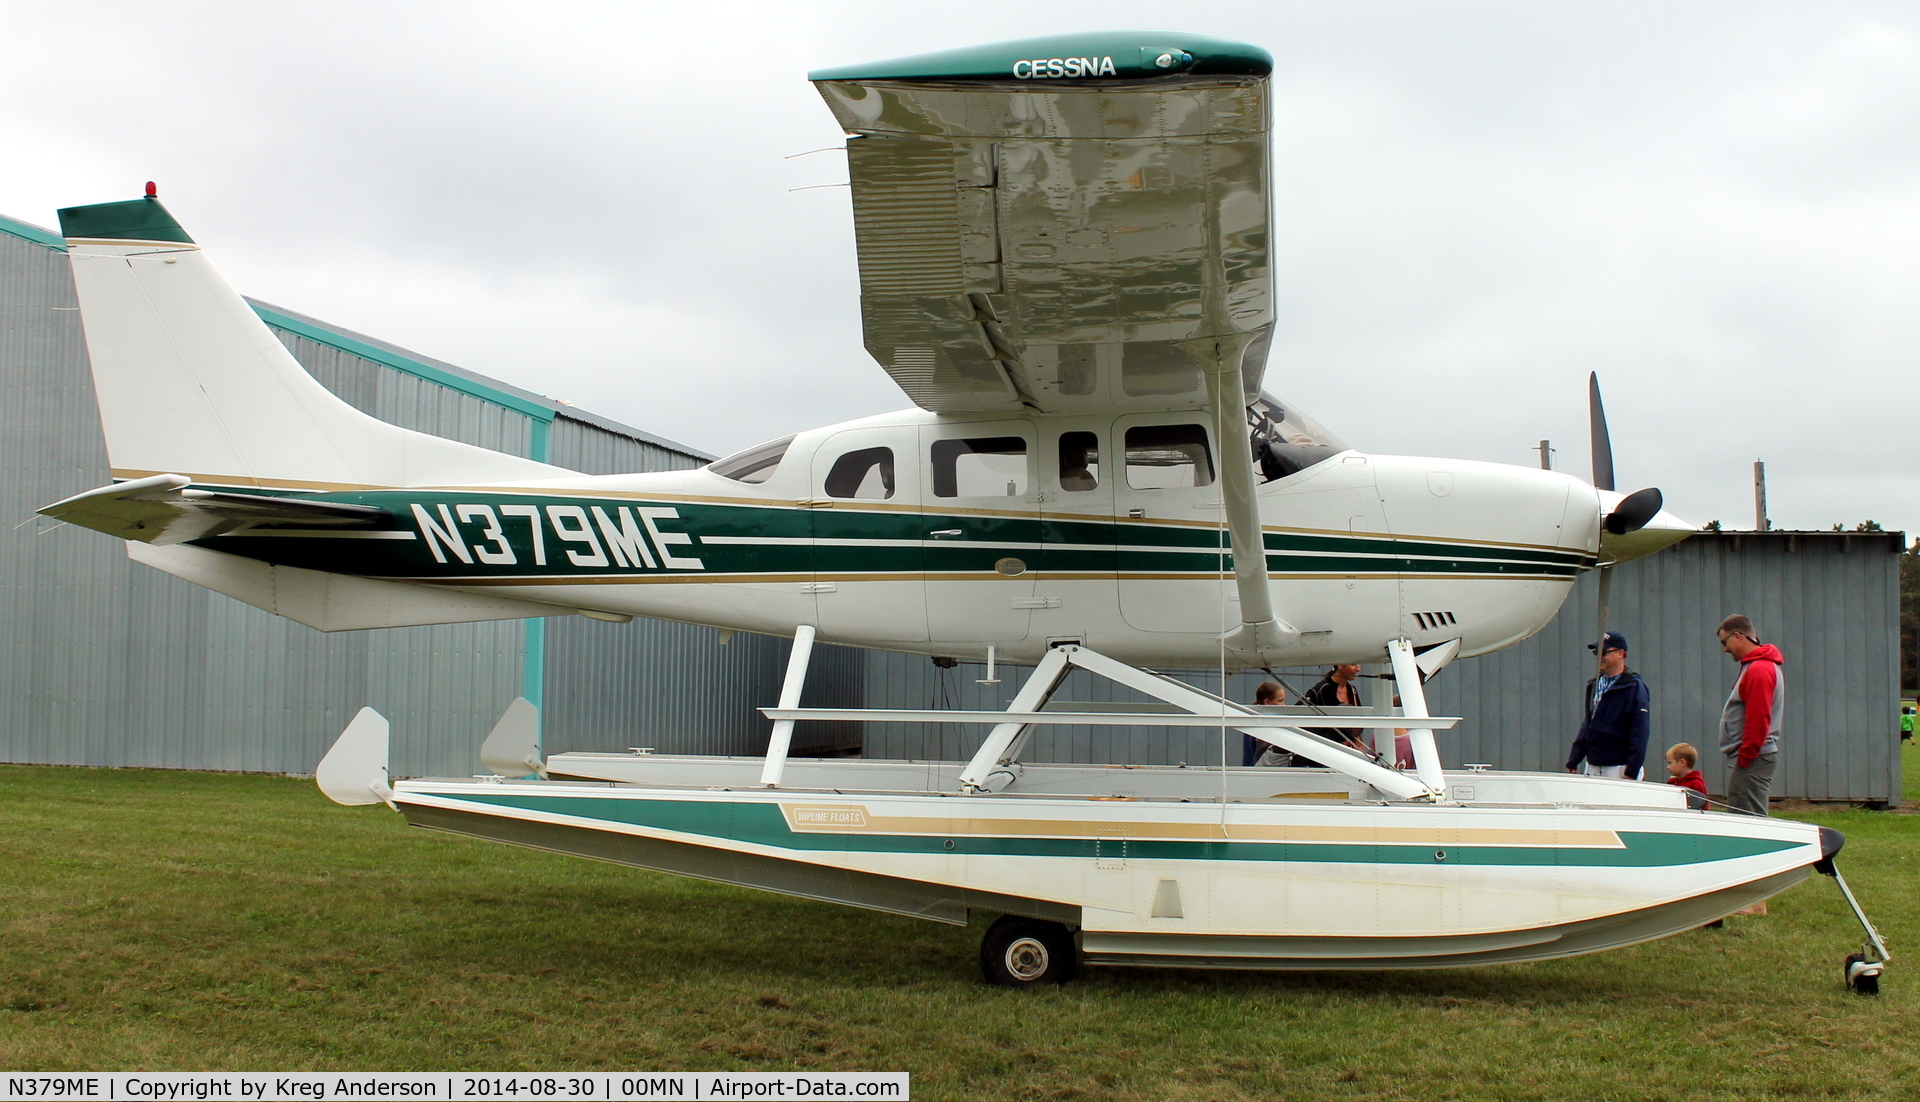 N379ME, 2000 Cessna T206H Turbo Stationair C/N T20608229, 2014 Gerry Beck Memorial Fly-in